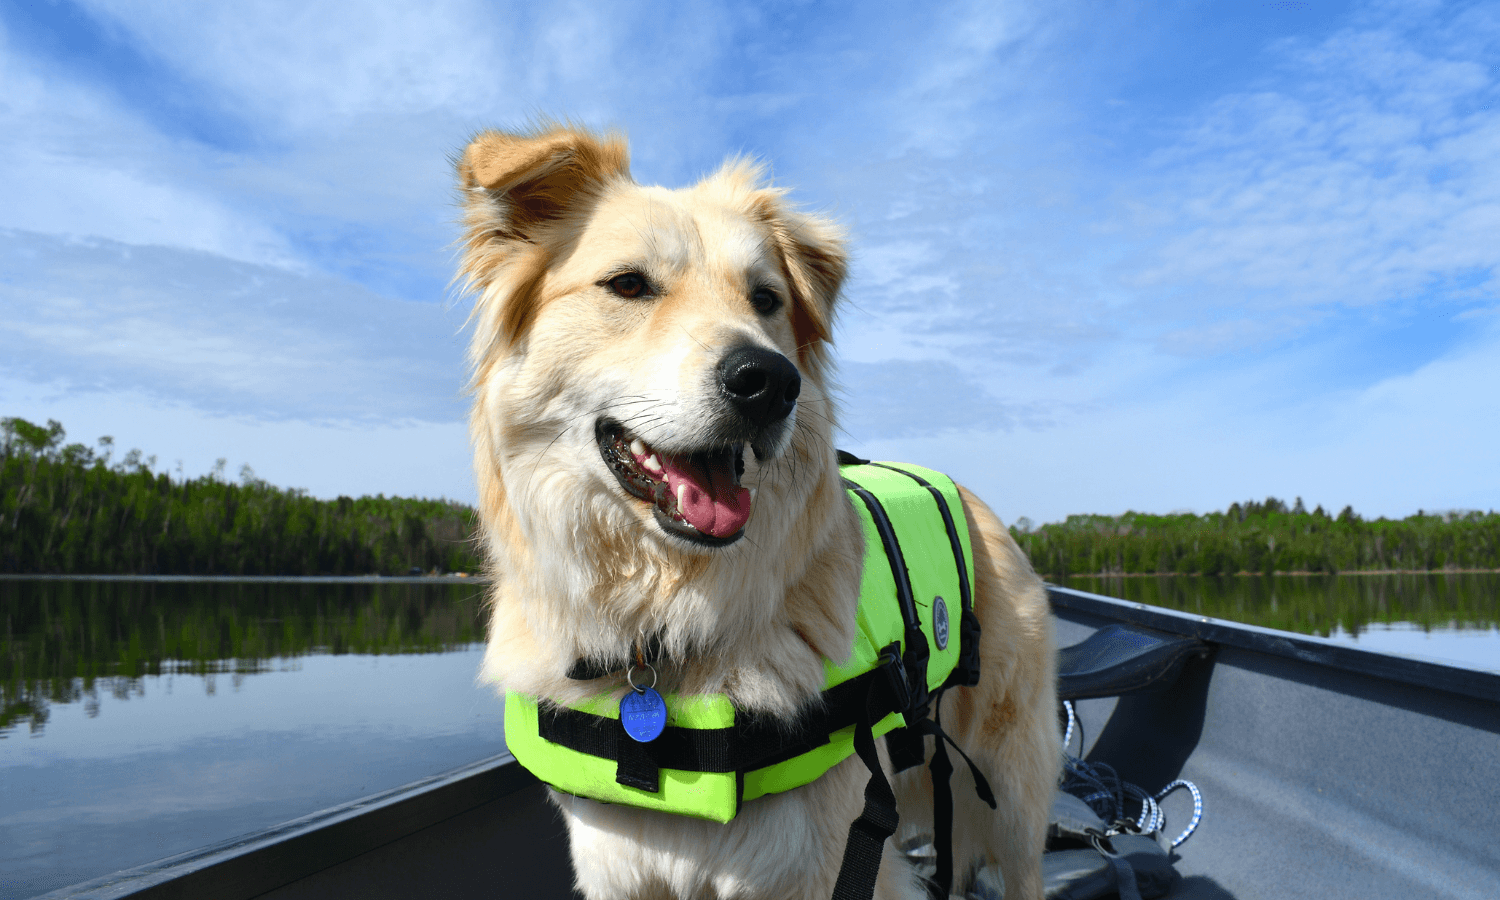 Hunde können im Boot oder Kanu mitfahren, wenn ihnen Wasser nichts ausmacht. Der Hund auf dem Bild trägt zur Sicherheit eine Schwimmweste. © Unsplash.com